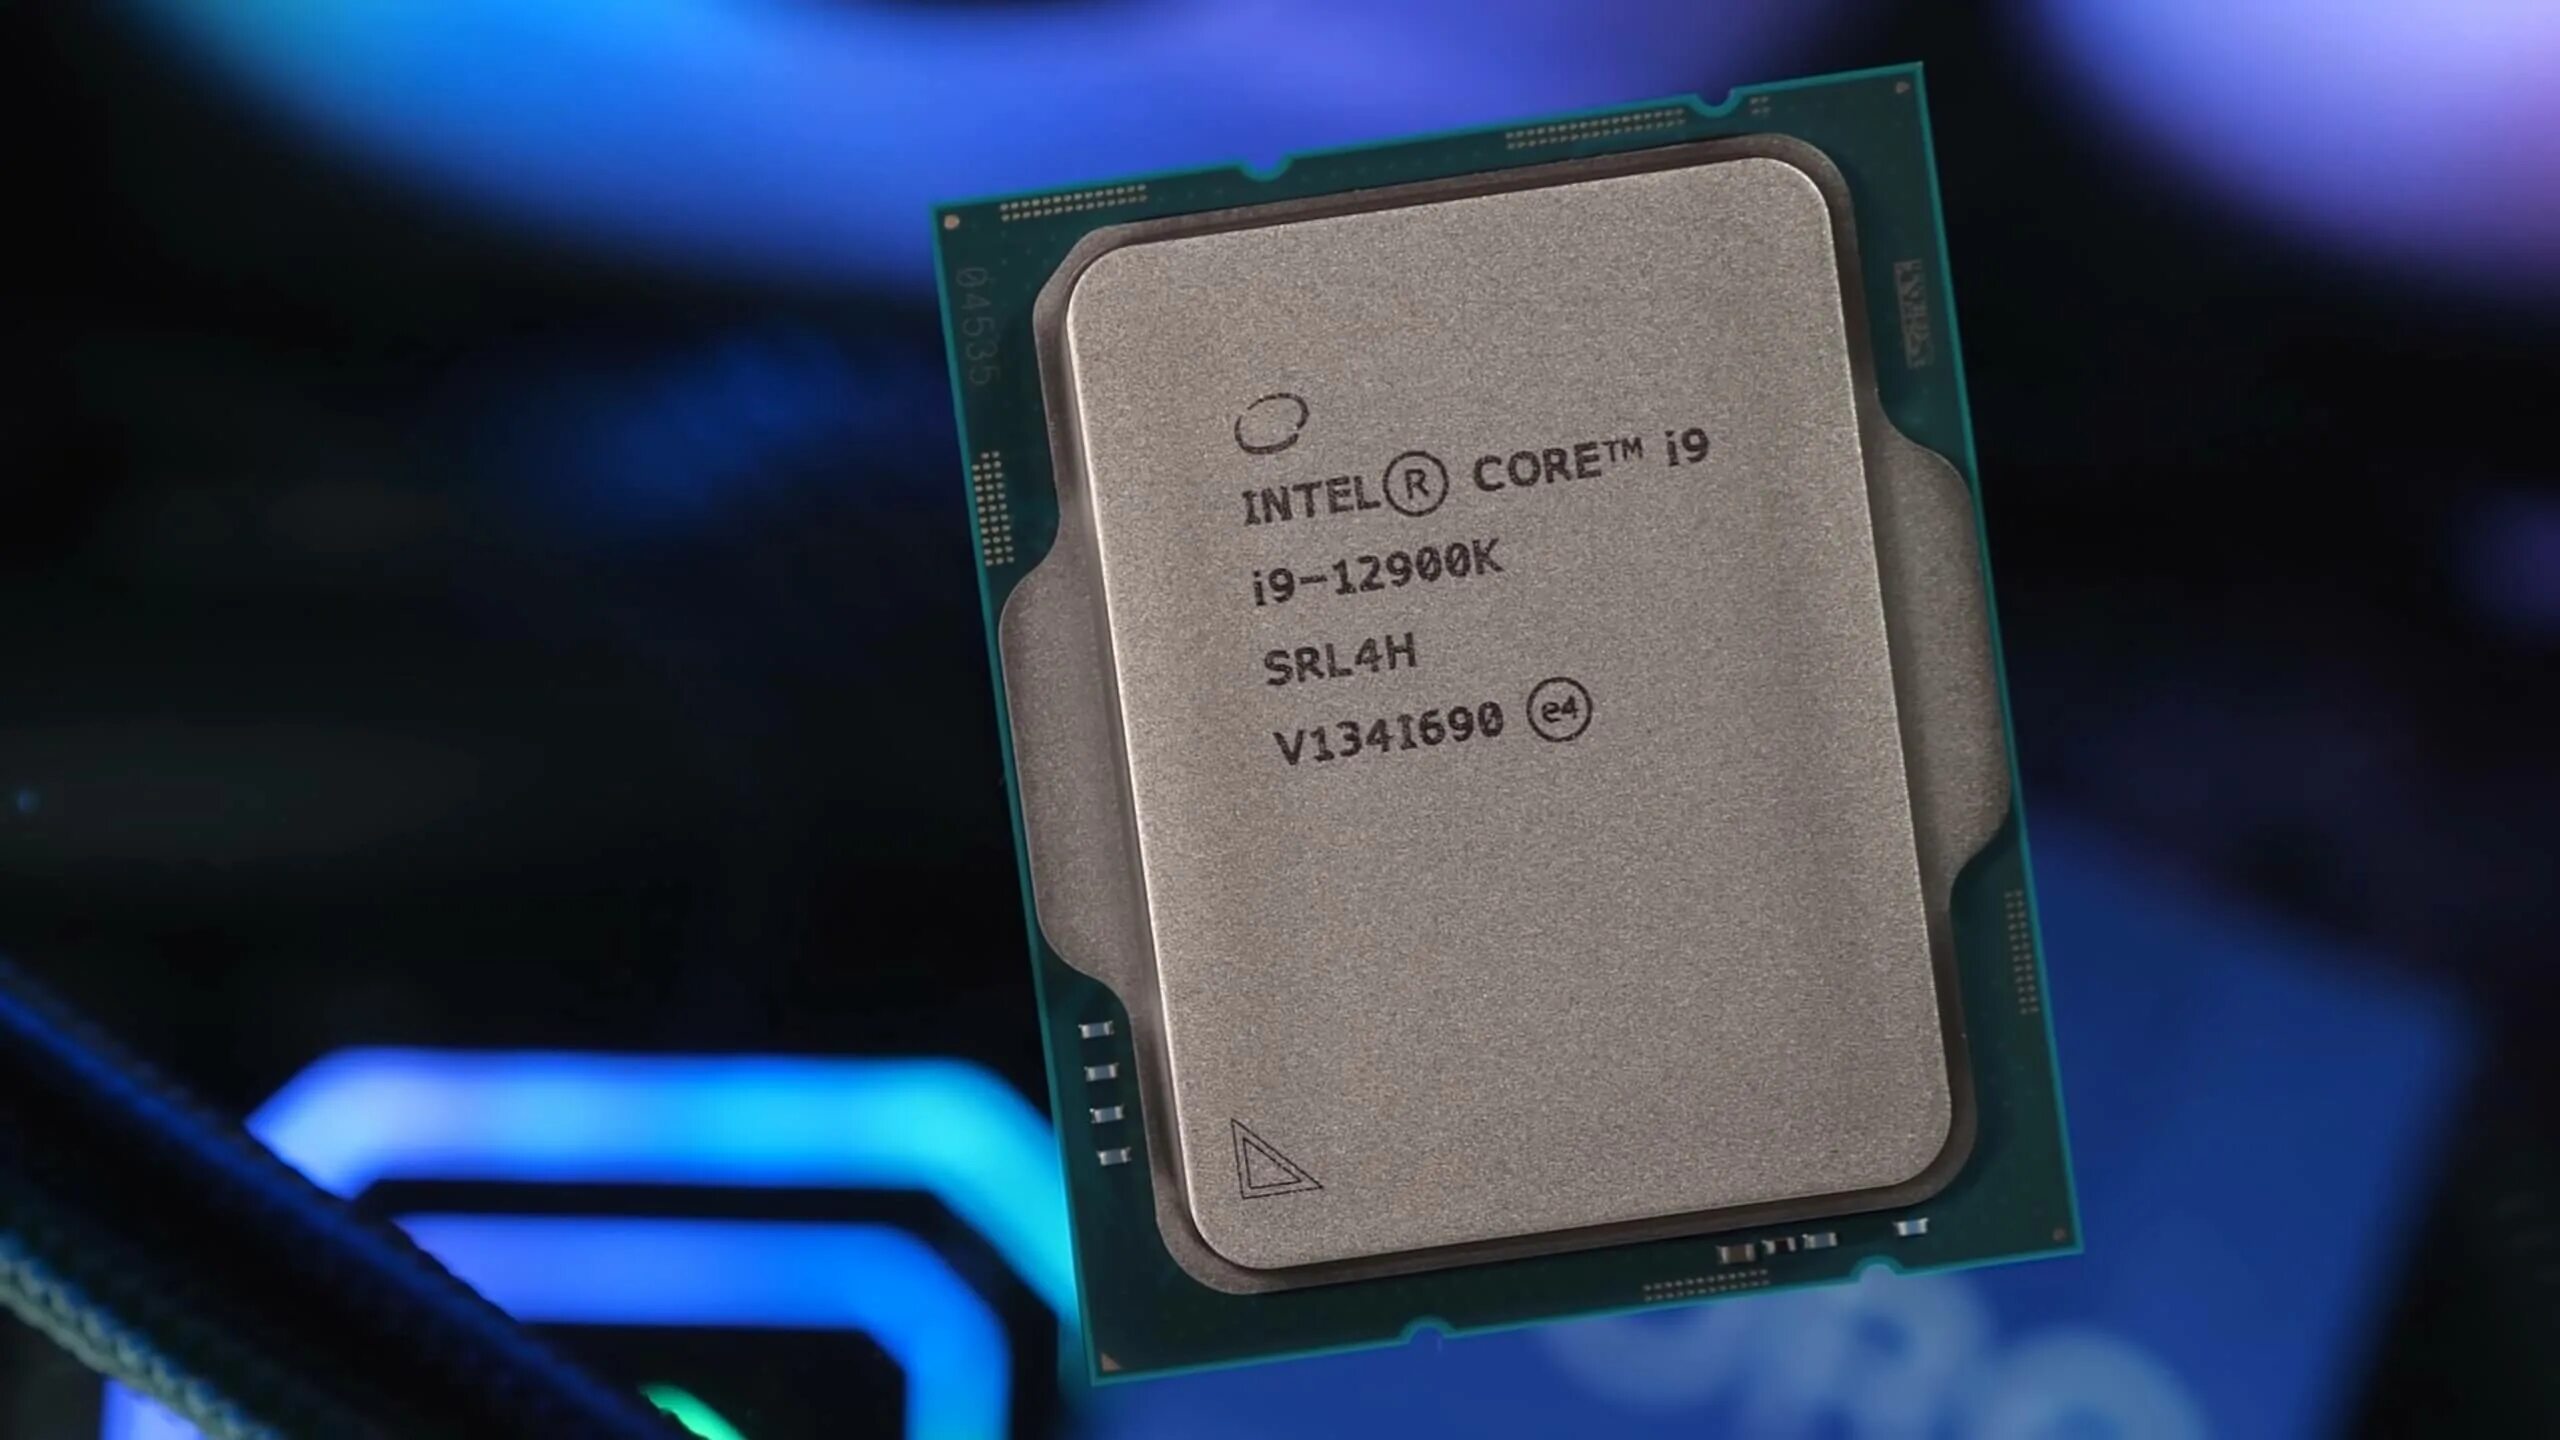 Процессор i9 12900k. Intel Core i9 12900k. Intel Core i9-12900ks. Процессор Intel Core i9 12900k, LGA 1700, OEM. Intel core i9 сравнение